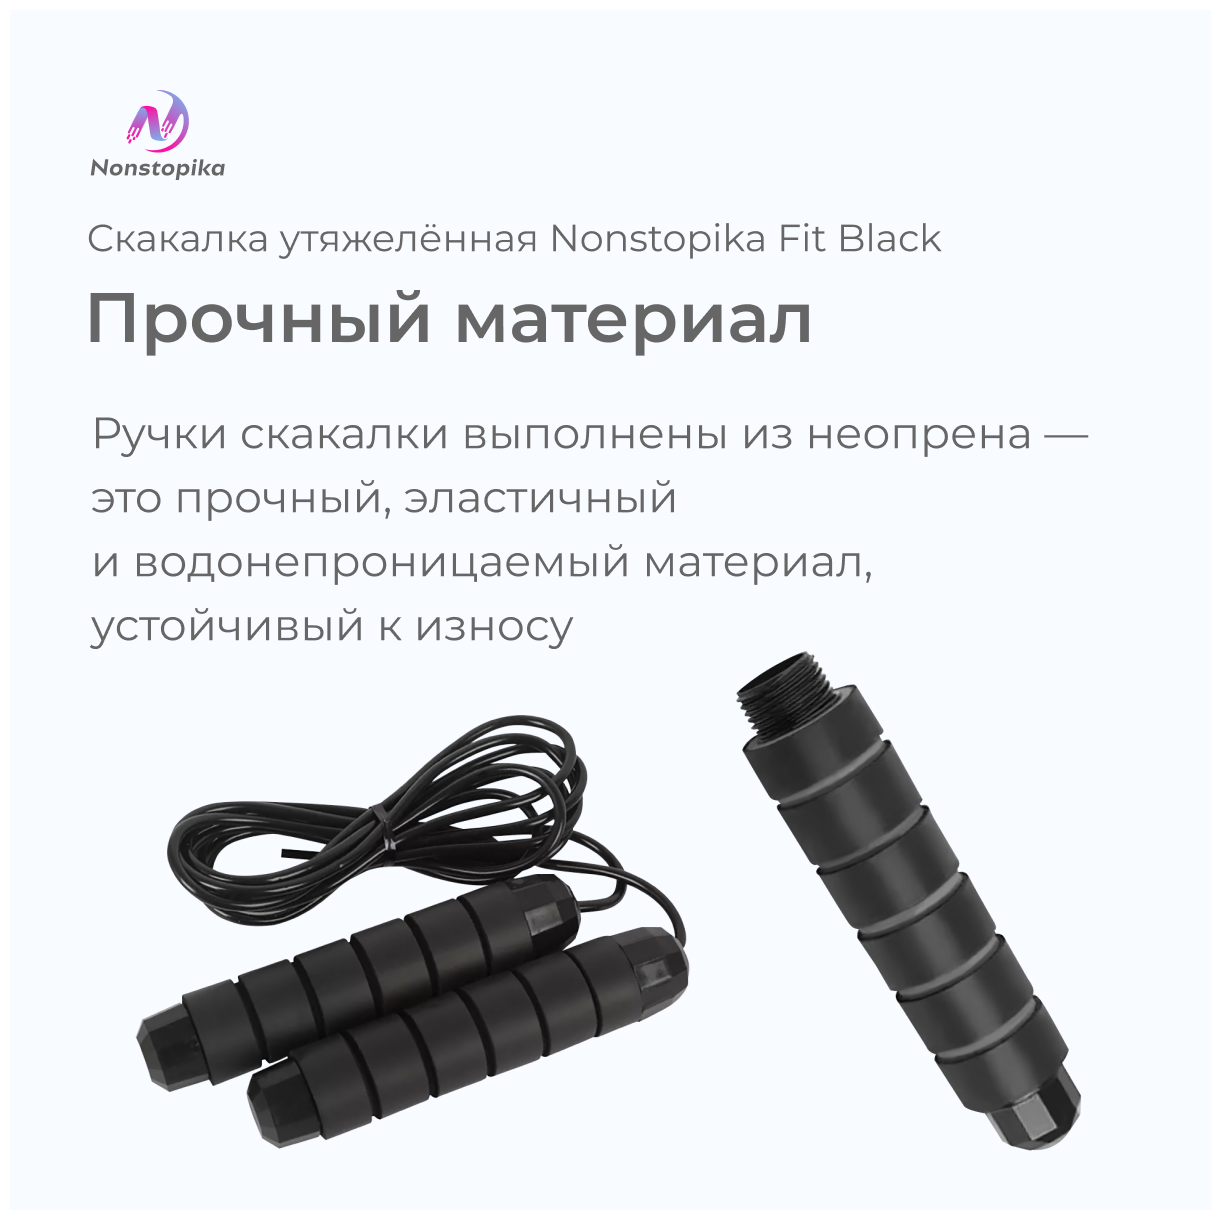 Скакалка для фитнеса, прыгалка, скоростная, утяжеленная в ручках, гимнастическая с подшипником ZDK FIT, черная